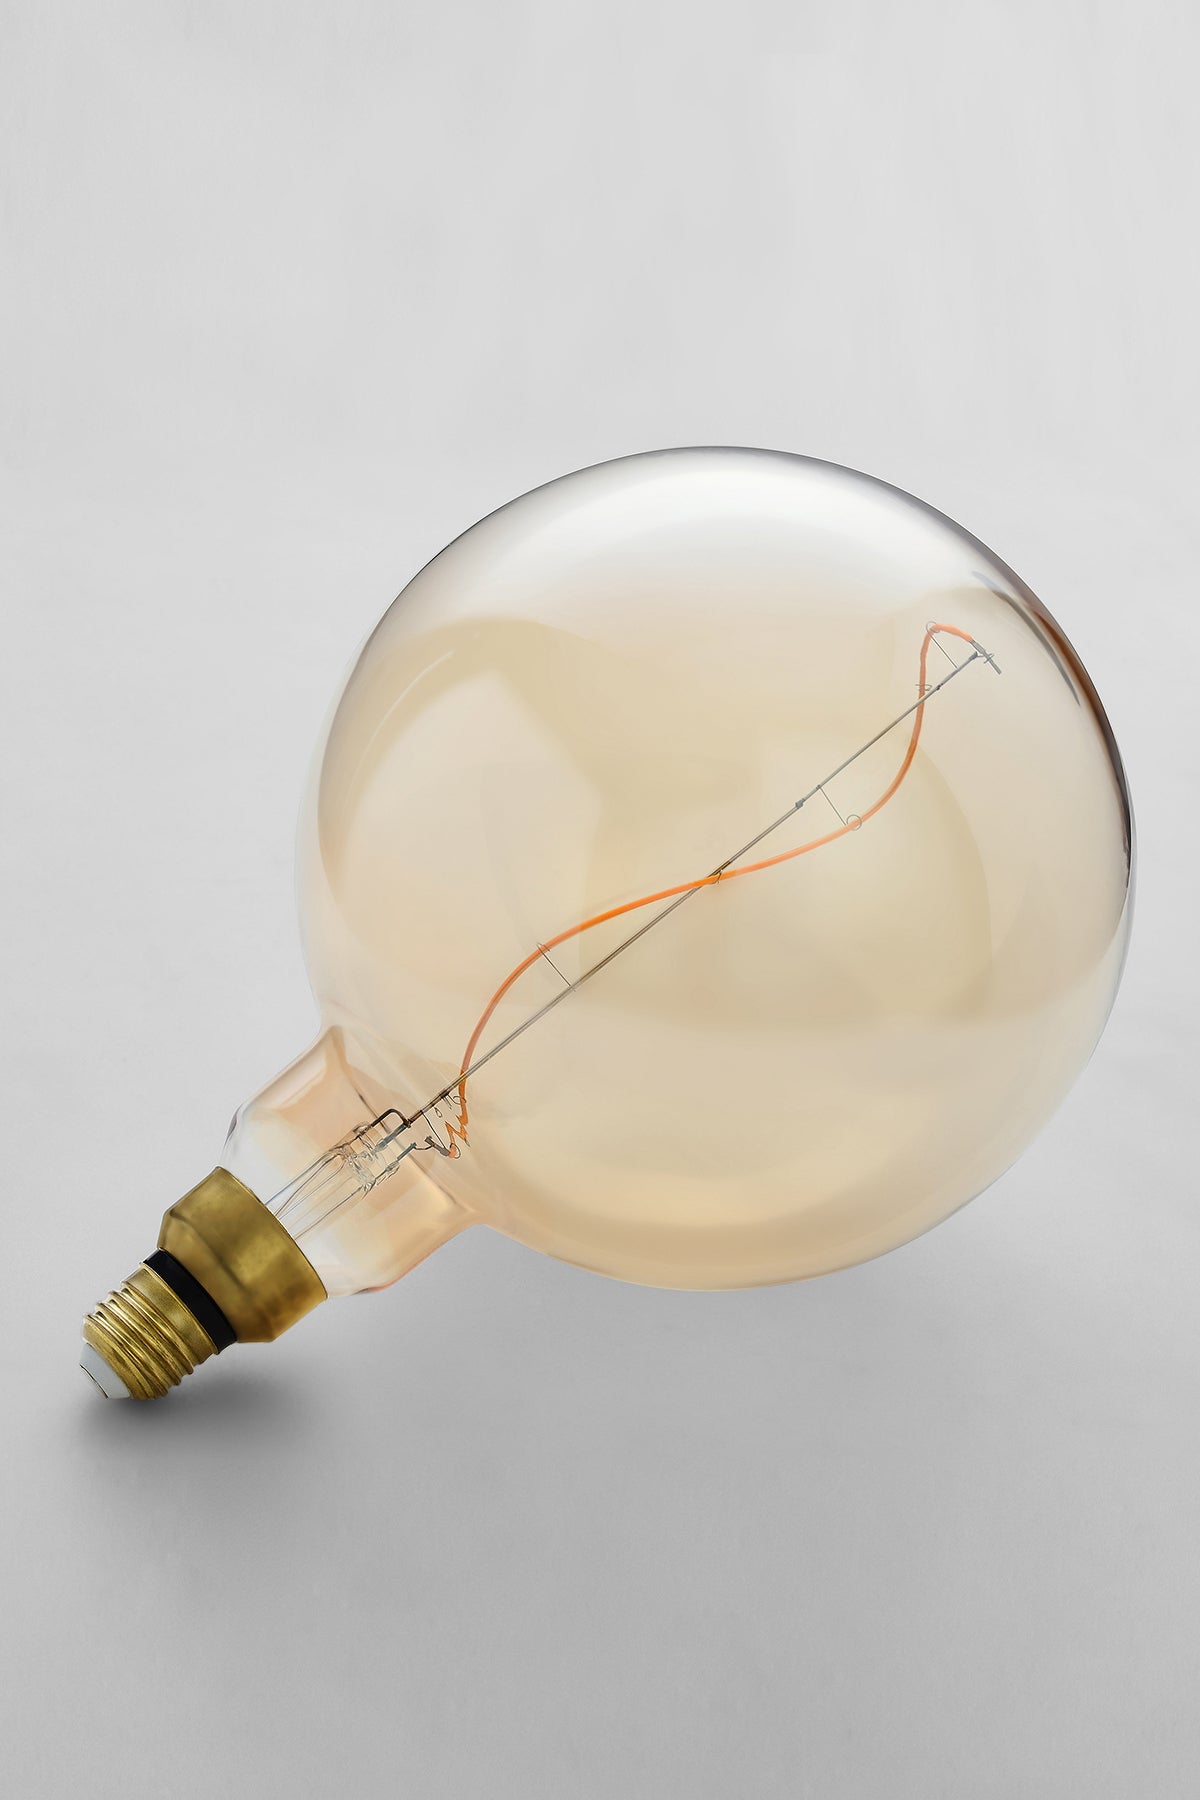 Oversized globe LED bulb with warm vintage Edison style glow